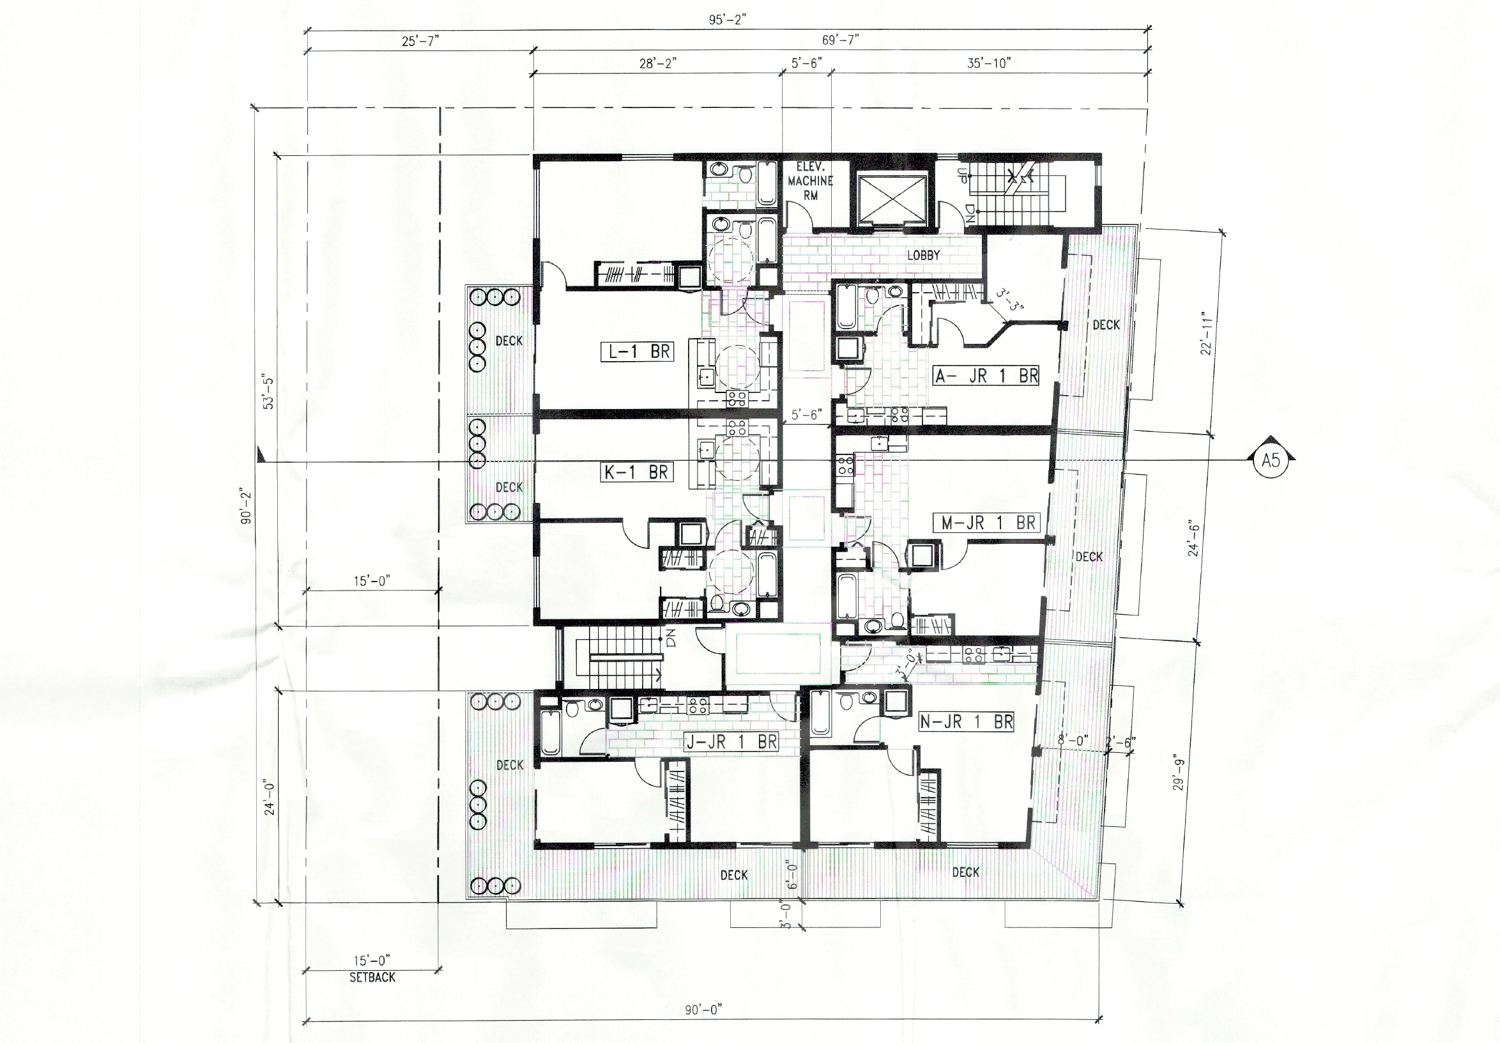 6501 Shattuck Avenue residential floor plan, illustration by Dinar and Associates